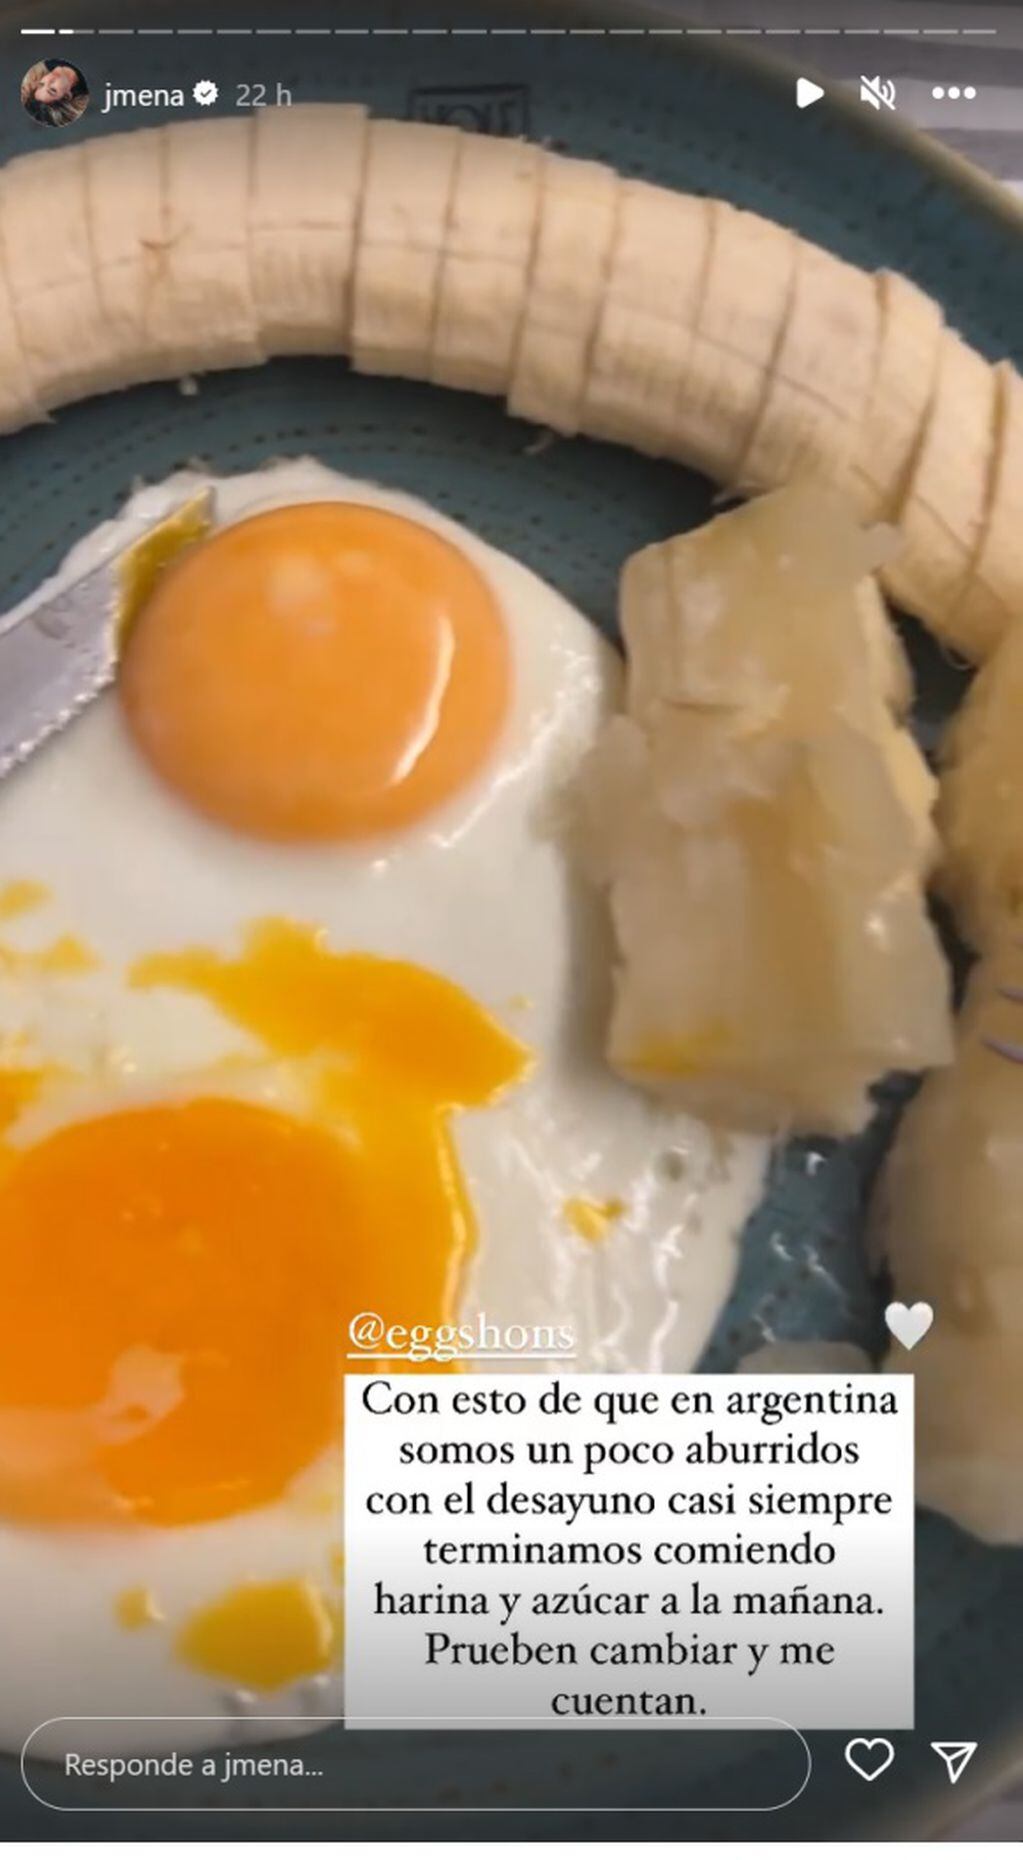 El original desayuno de Jimena Barón